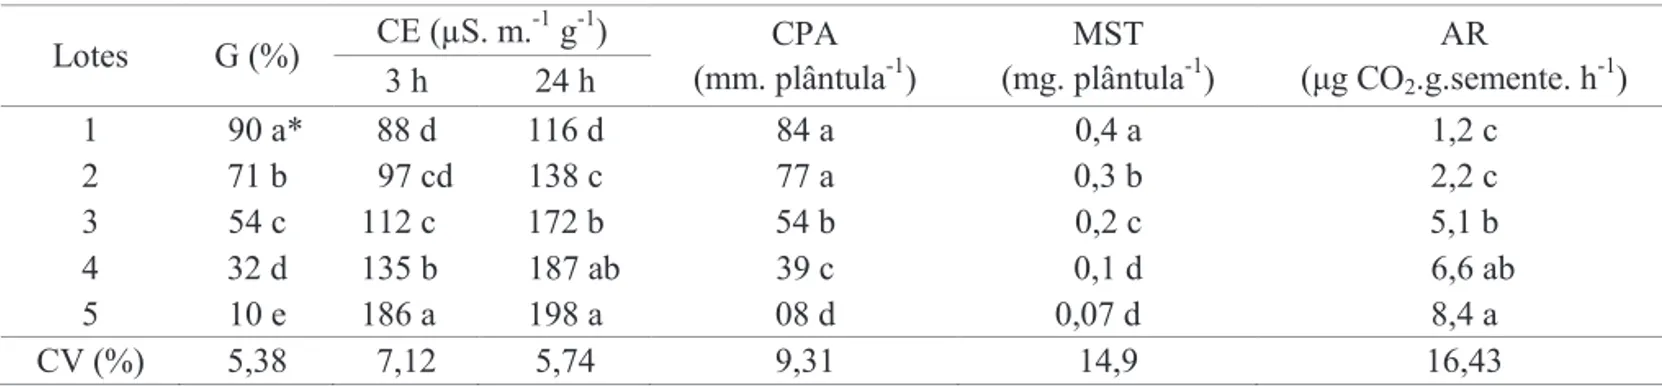 Tabela 1. Germinação em areia (G), condutividade elétrica (CE), comprimento da parte aérea (CPA), massa seca total  (MST) e atividade respiratória (AR) de cinco lotes de sementes de girassol cv